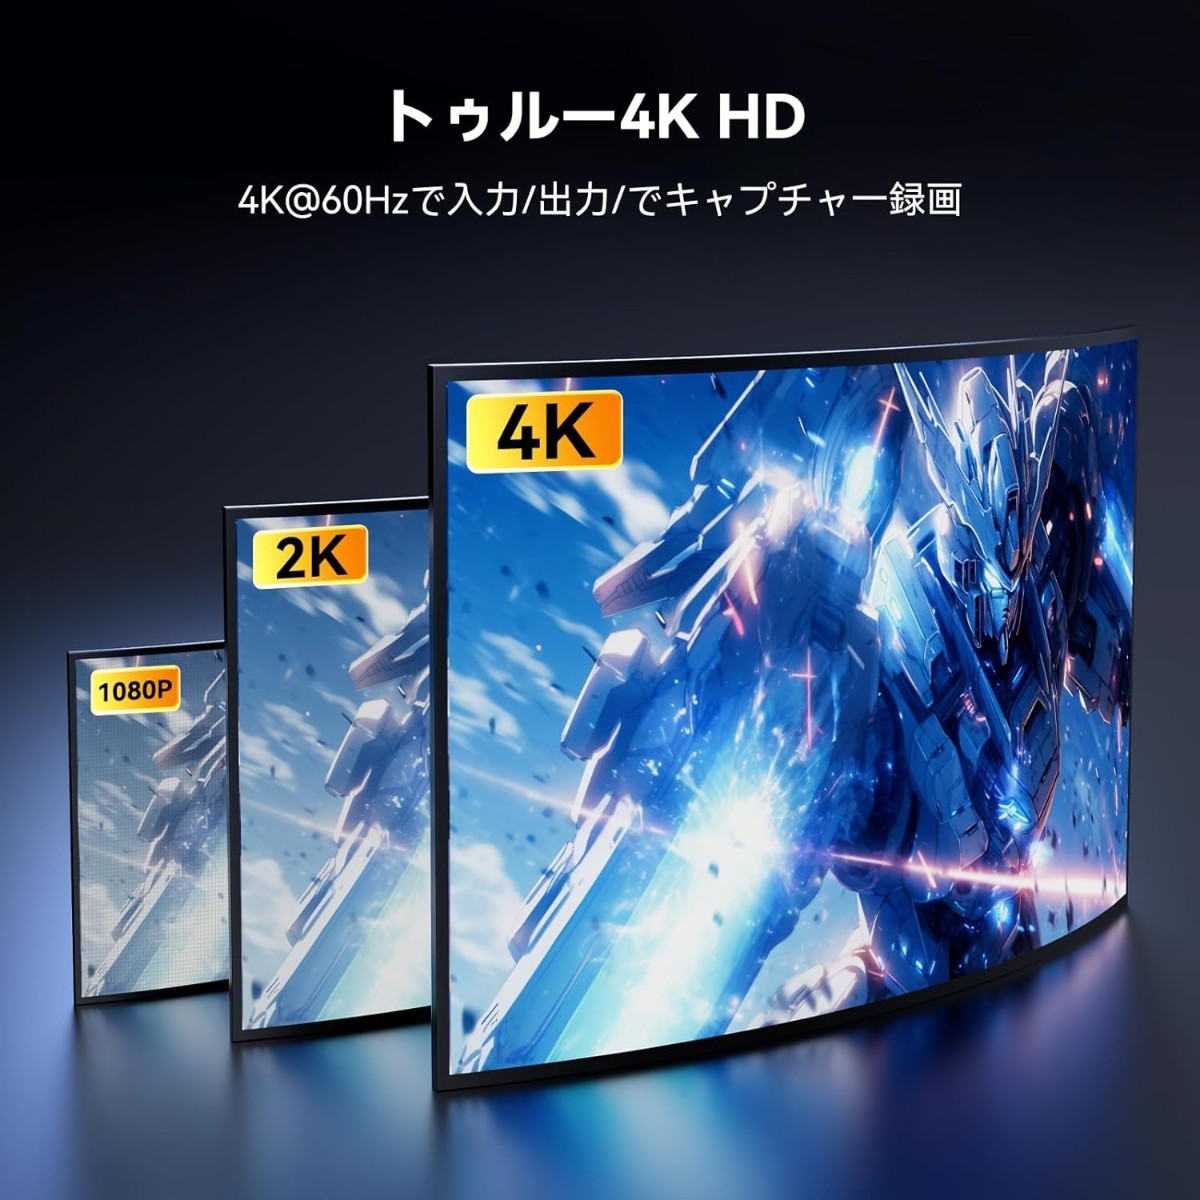 新品☆定価15,999円 ANYOYO 4K@60Hz HDMI キャプチャーボード USB3.0 ビデオ 4K@60FPS HD 録画配信 高速データ転送 画面共有 録画 外付け